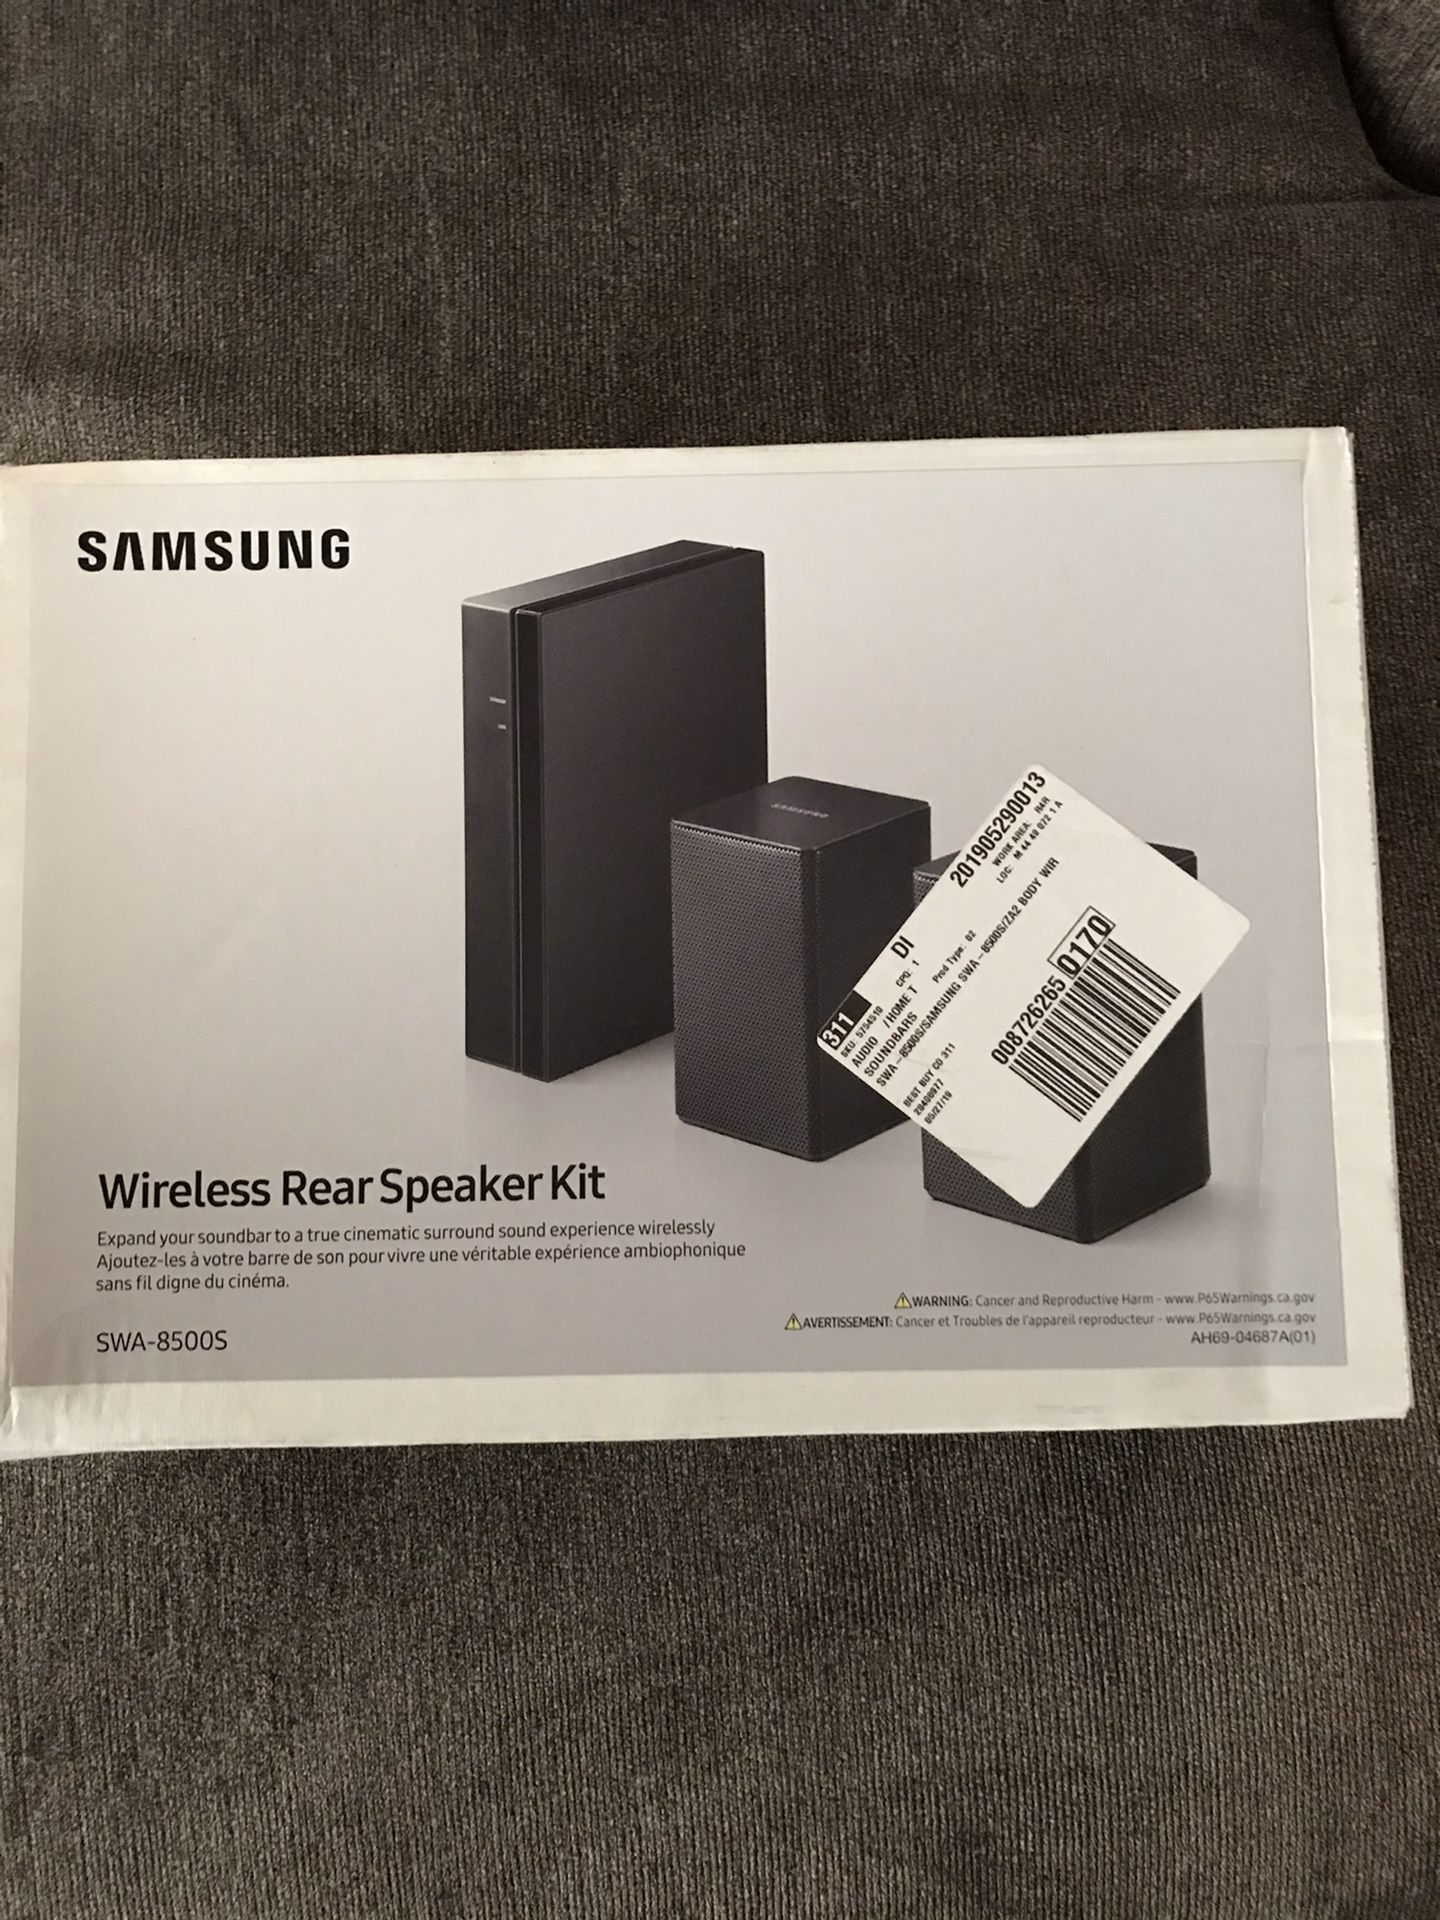 Samsung Wireless Rear Speaker Kit